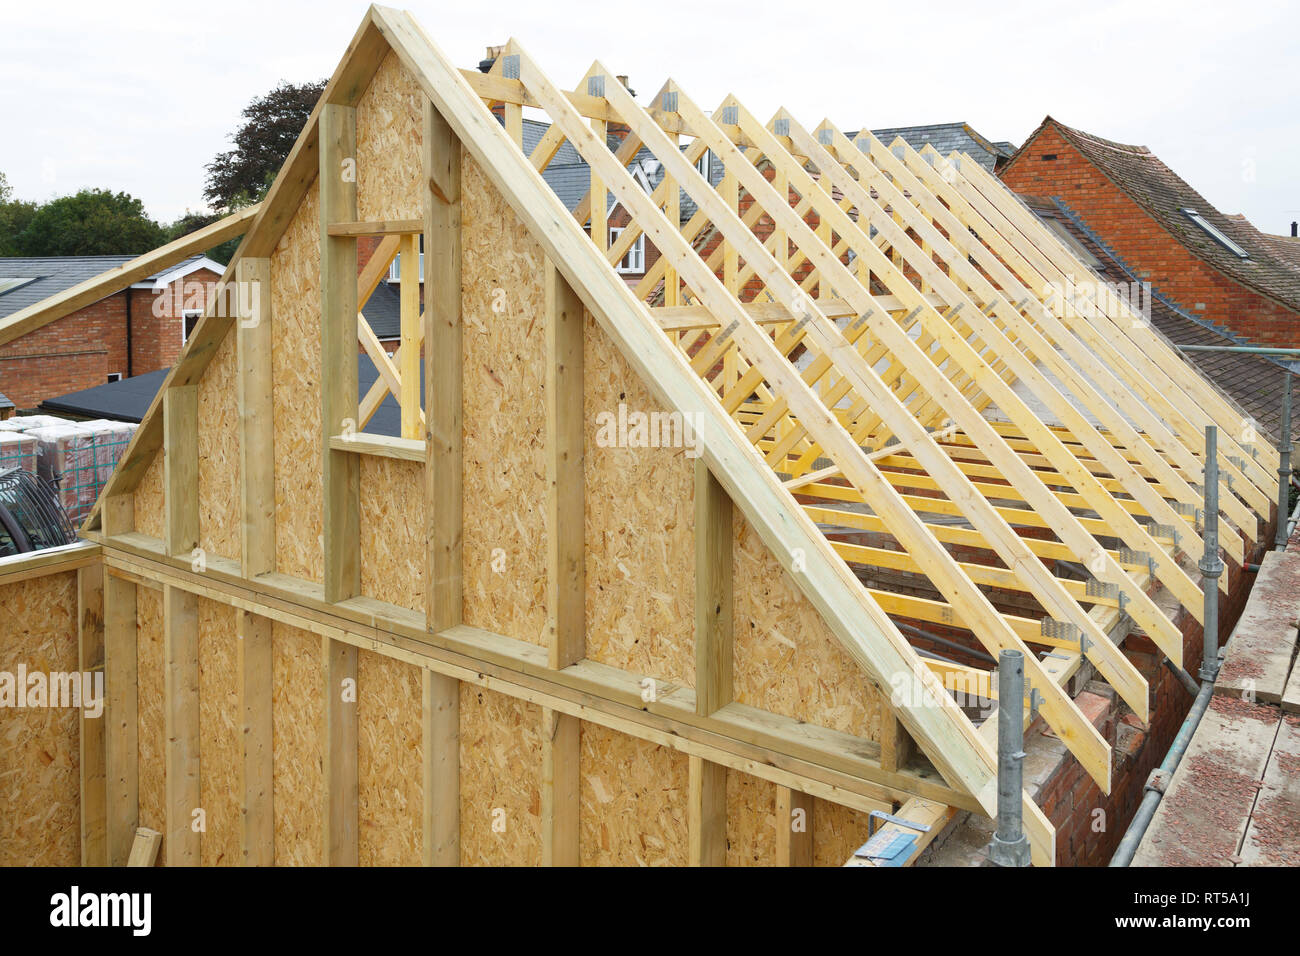 Fermes de toit en bois et de pignon d'une maison à ossature bois en construction Banque D'Images